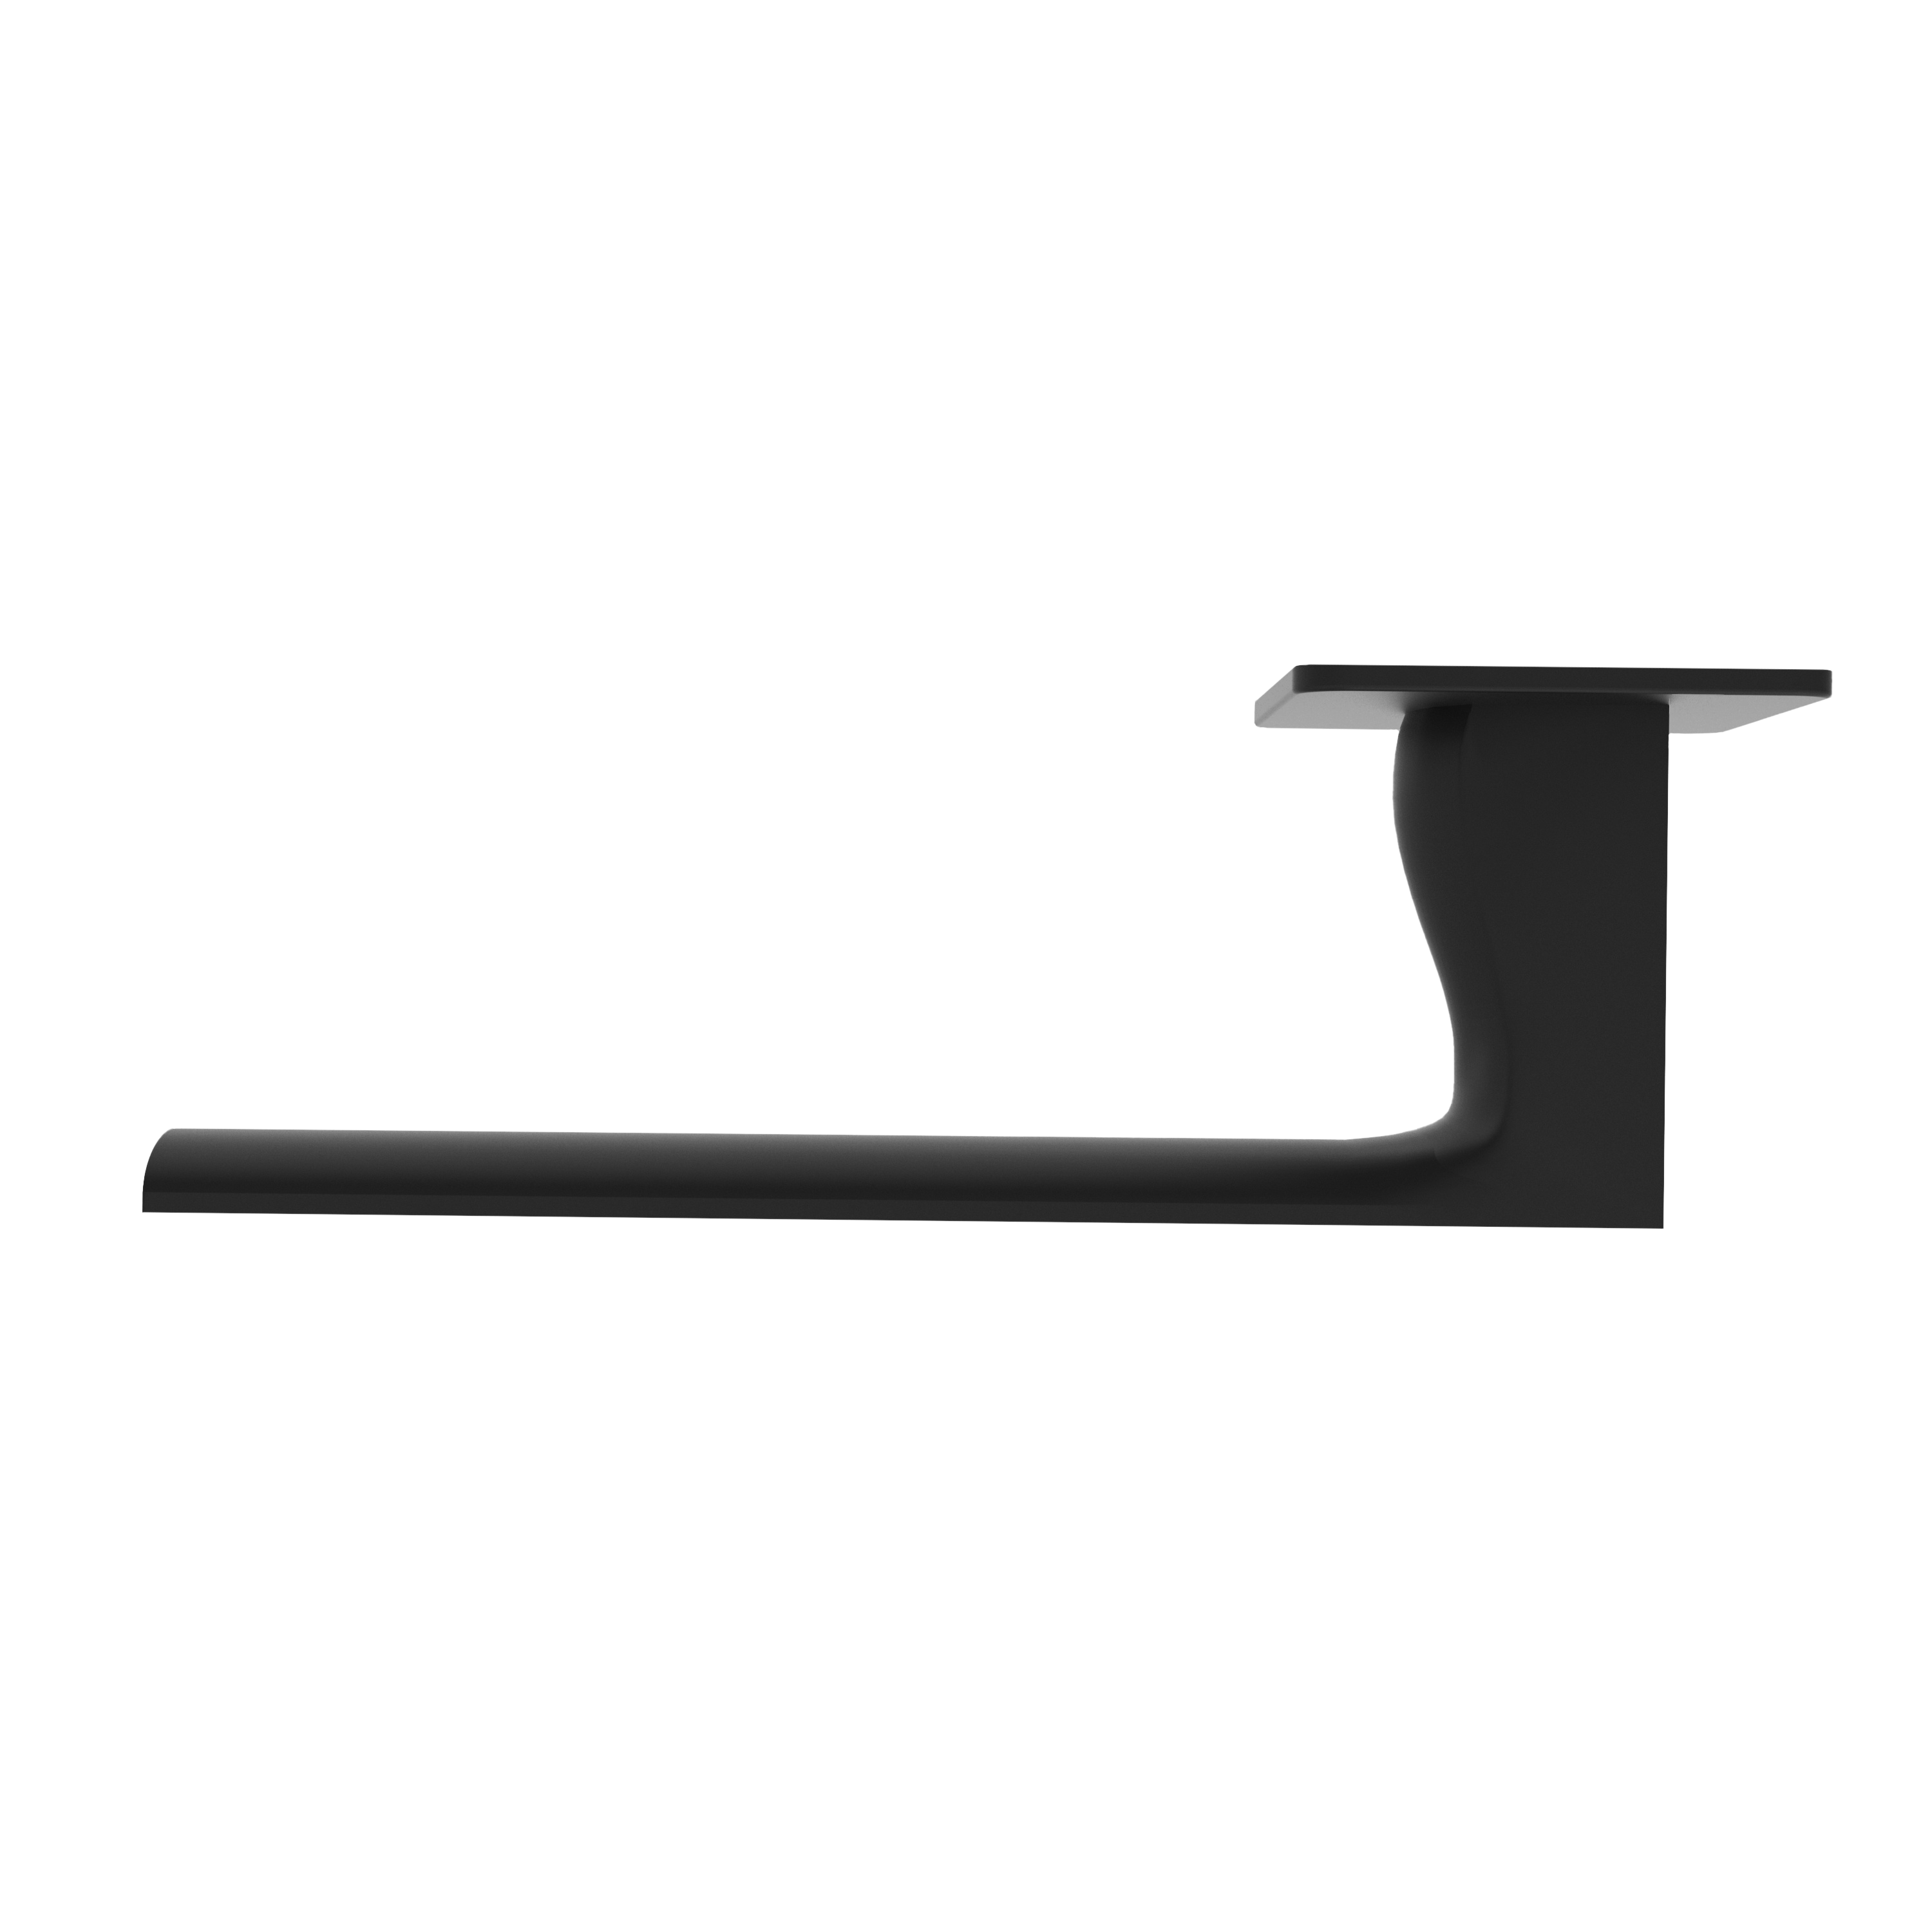 Türgriff mit Flachrosette eckig L-Form gerade Modell Ronara Mattschwarz Magnetclip Klasse 1